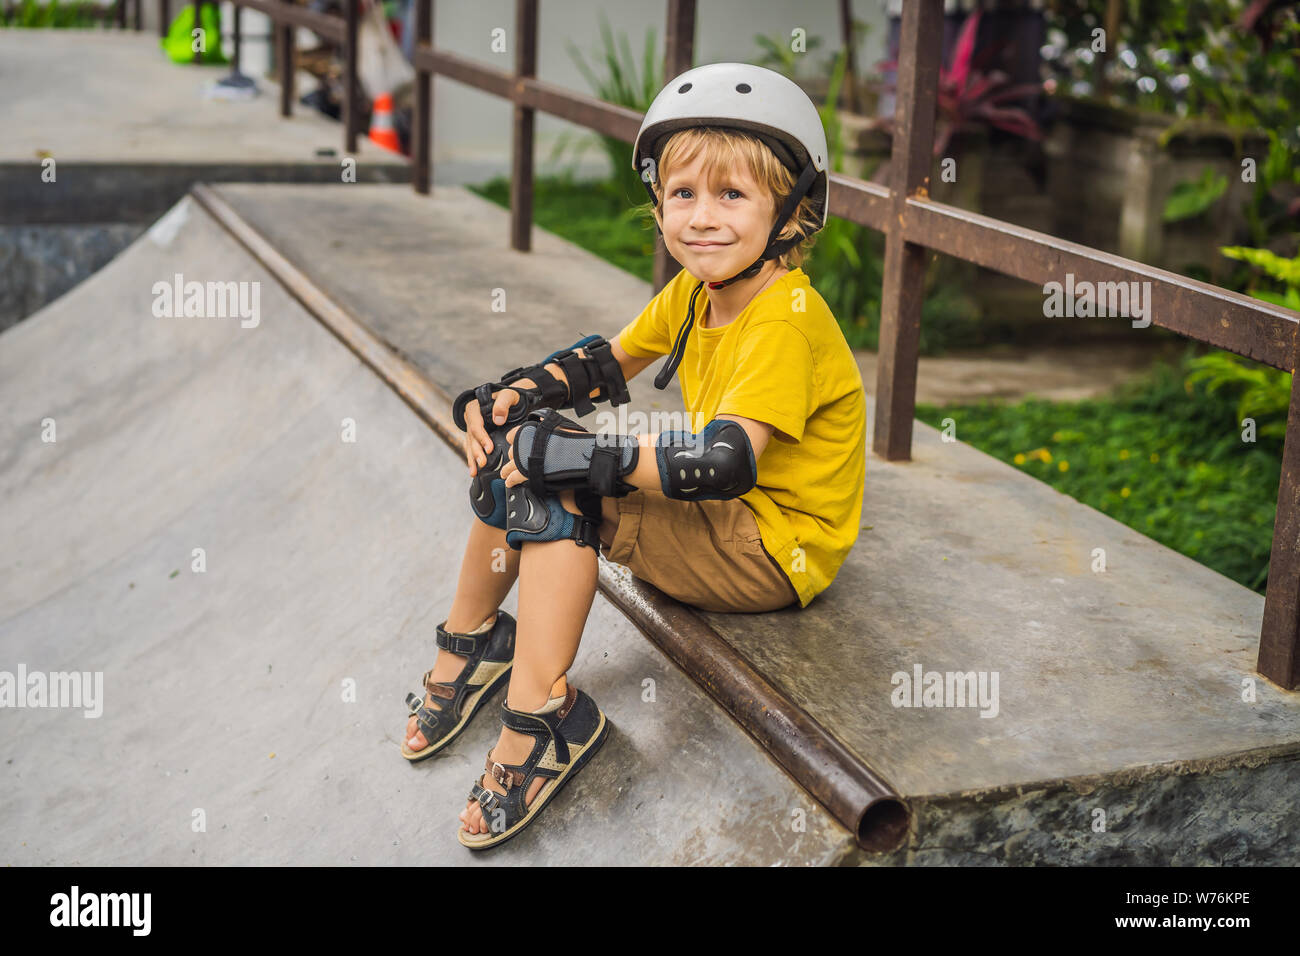 Athletic boy en casco y rodilleras aprende a monopatín en un skate